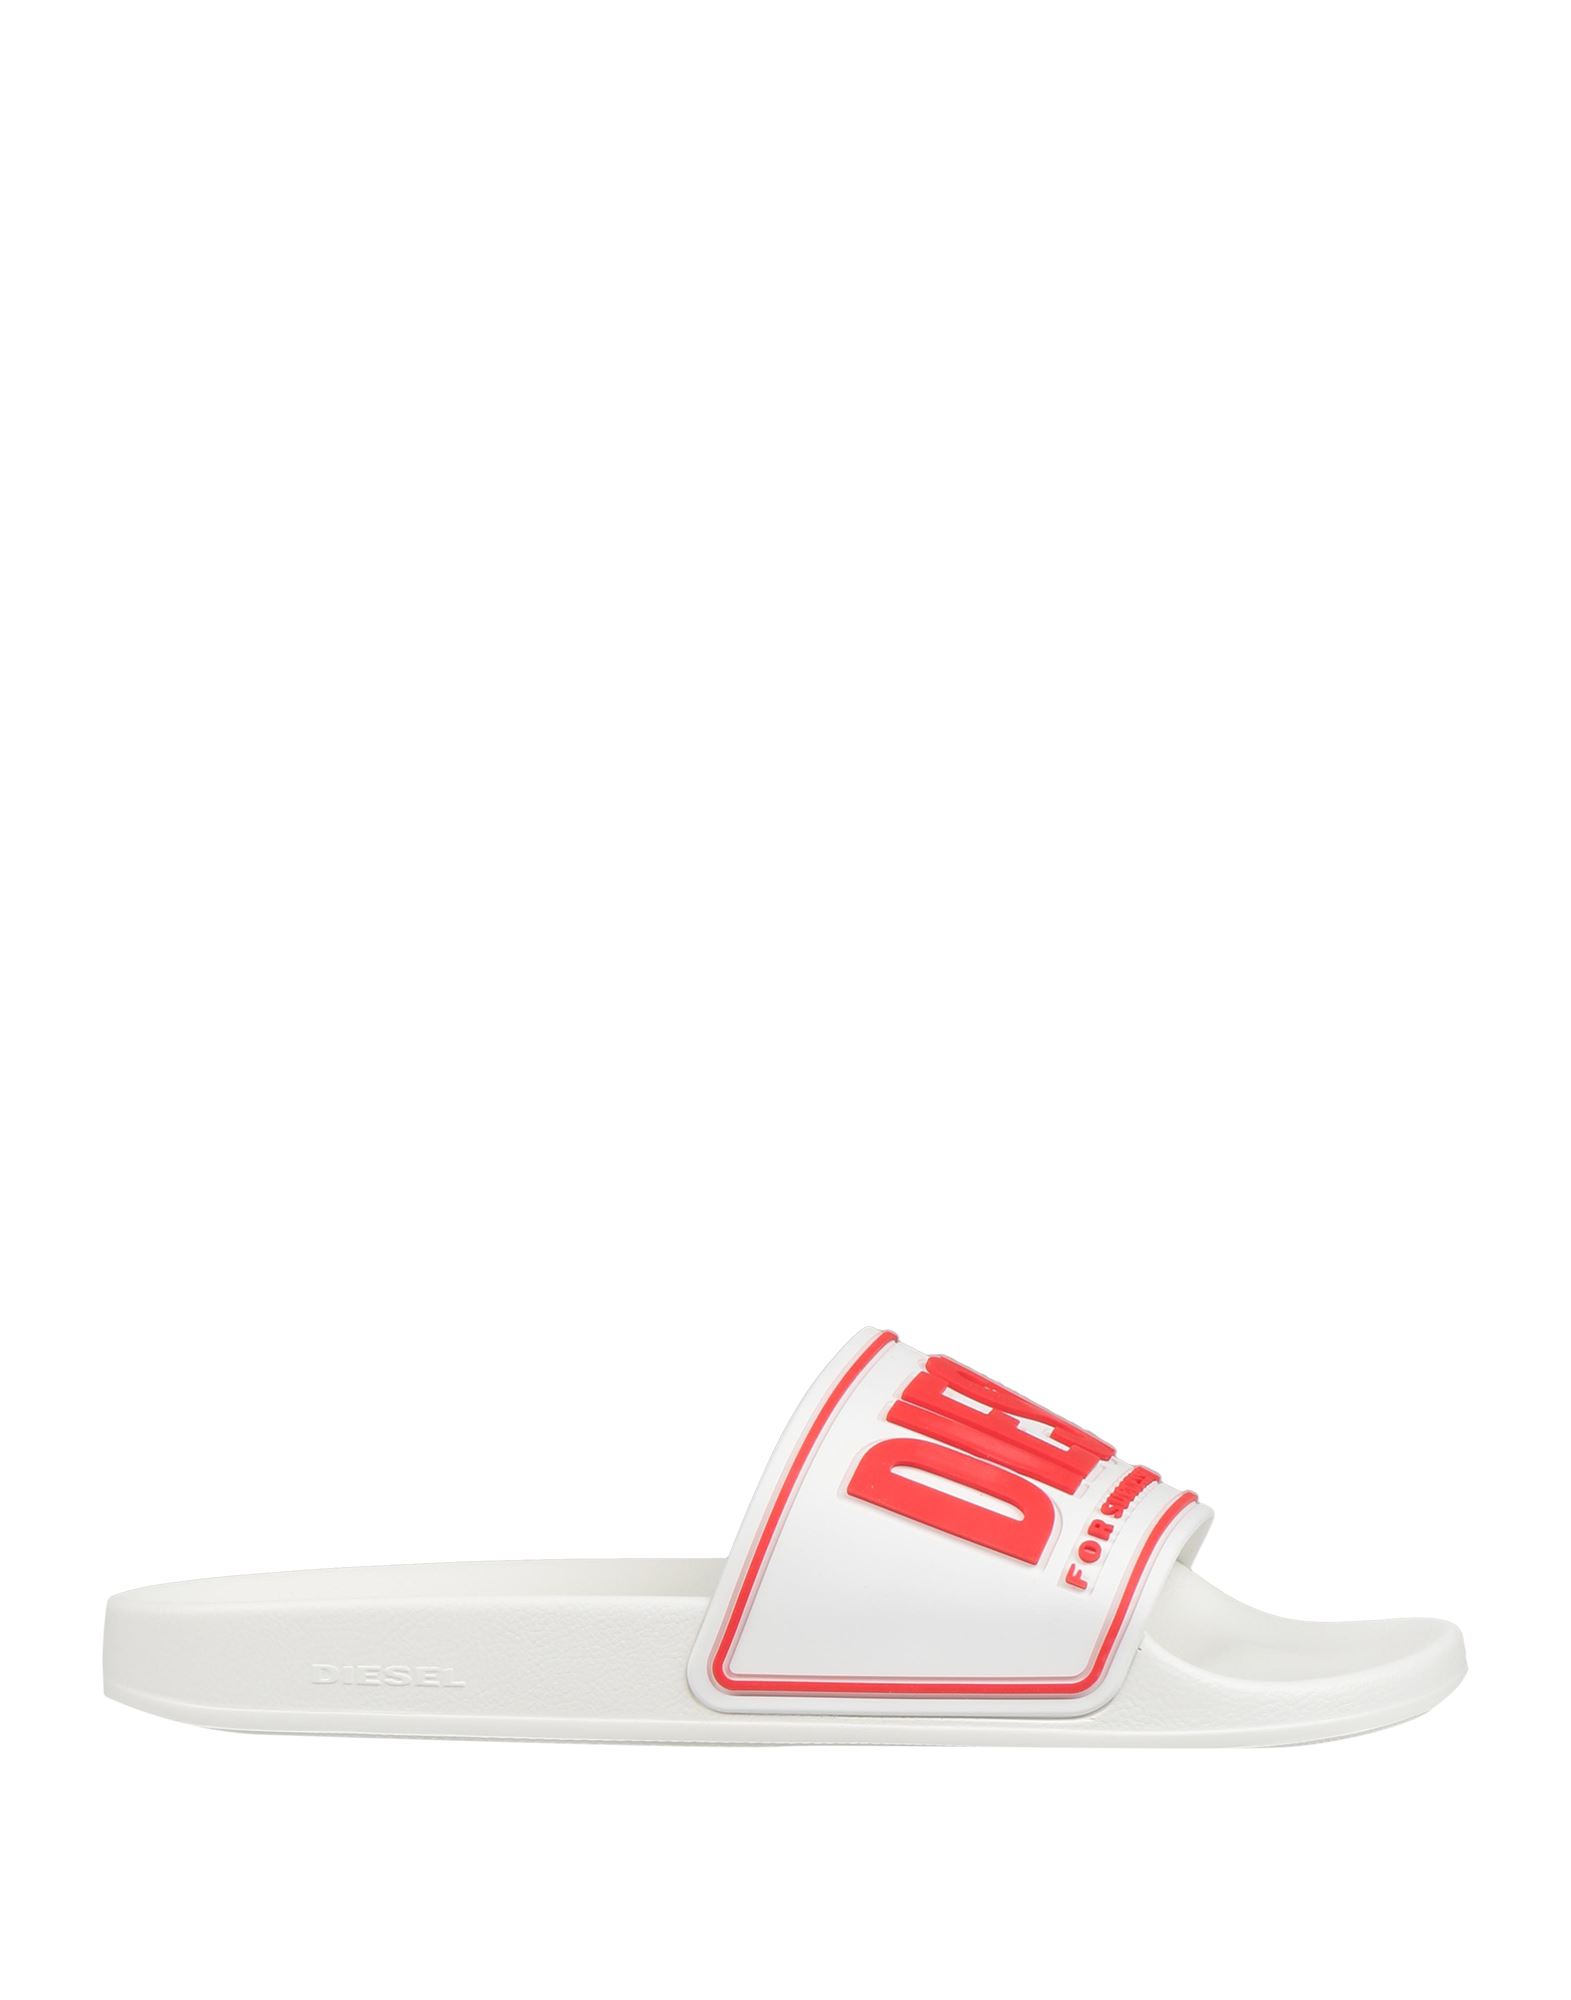 Shop Diesel Sa-mayemi Cc Man Sandals White Size 7.5 Polyurethane